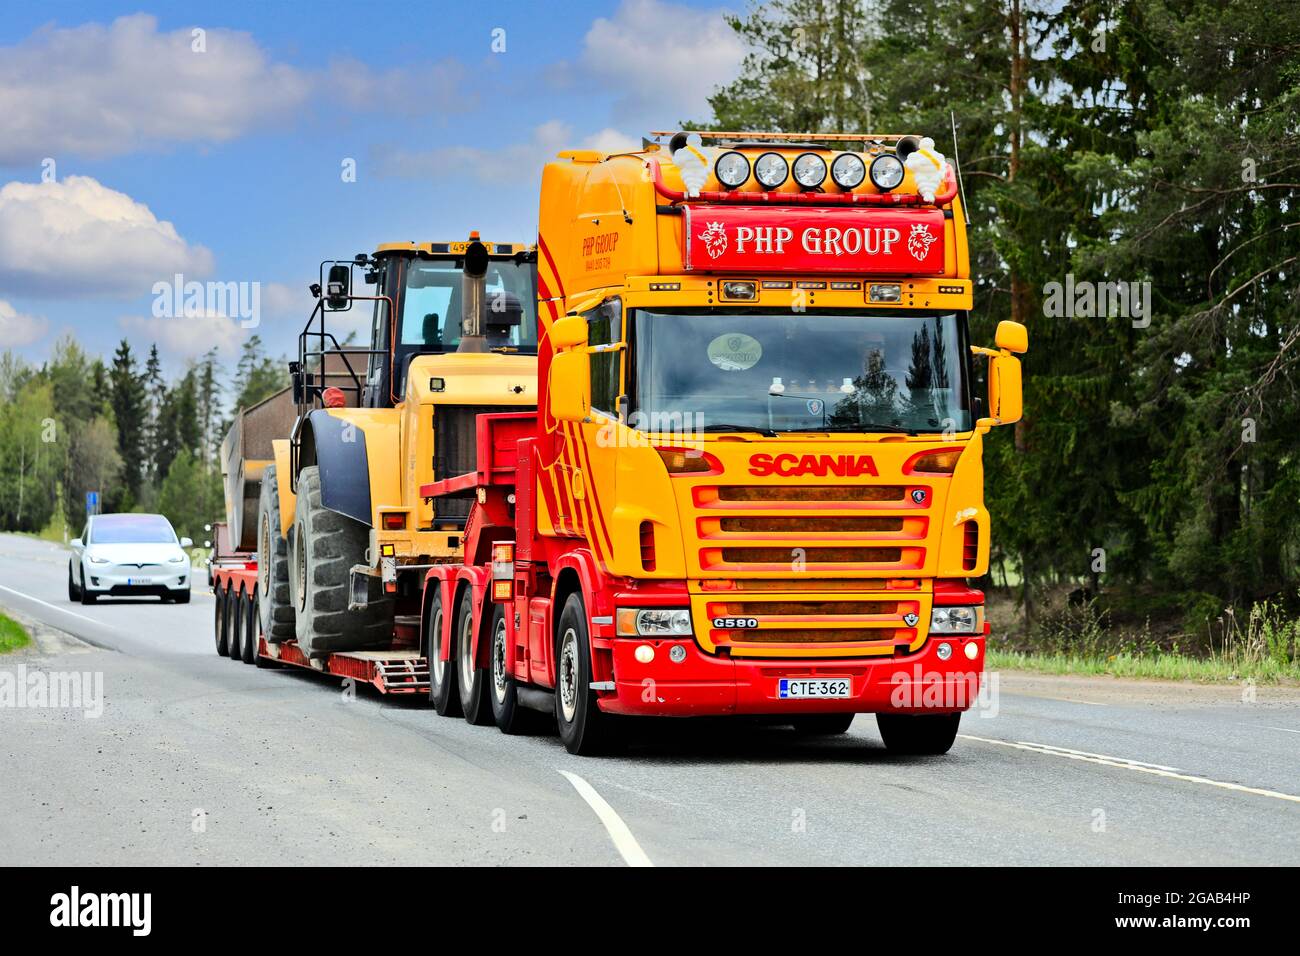 Scania G580 personalizada camión del grupo PHP delante de remolque de cuello de cisne transporta la pala de ruedas Cat en la autopista 2. Jokioinen, Finlandia. 14 de mayo de 2021. Foto de stock